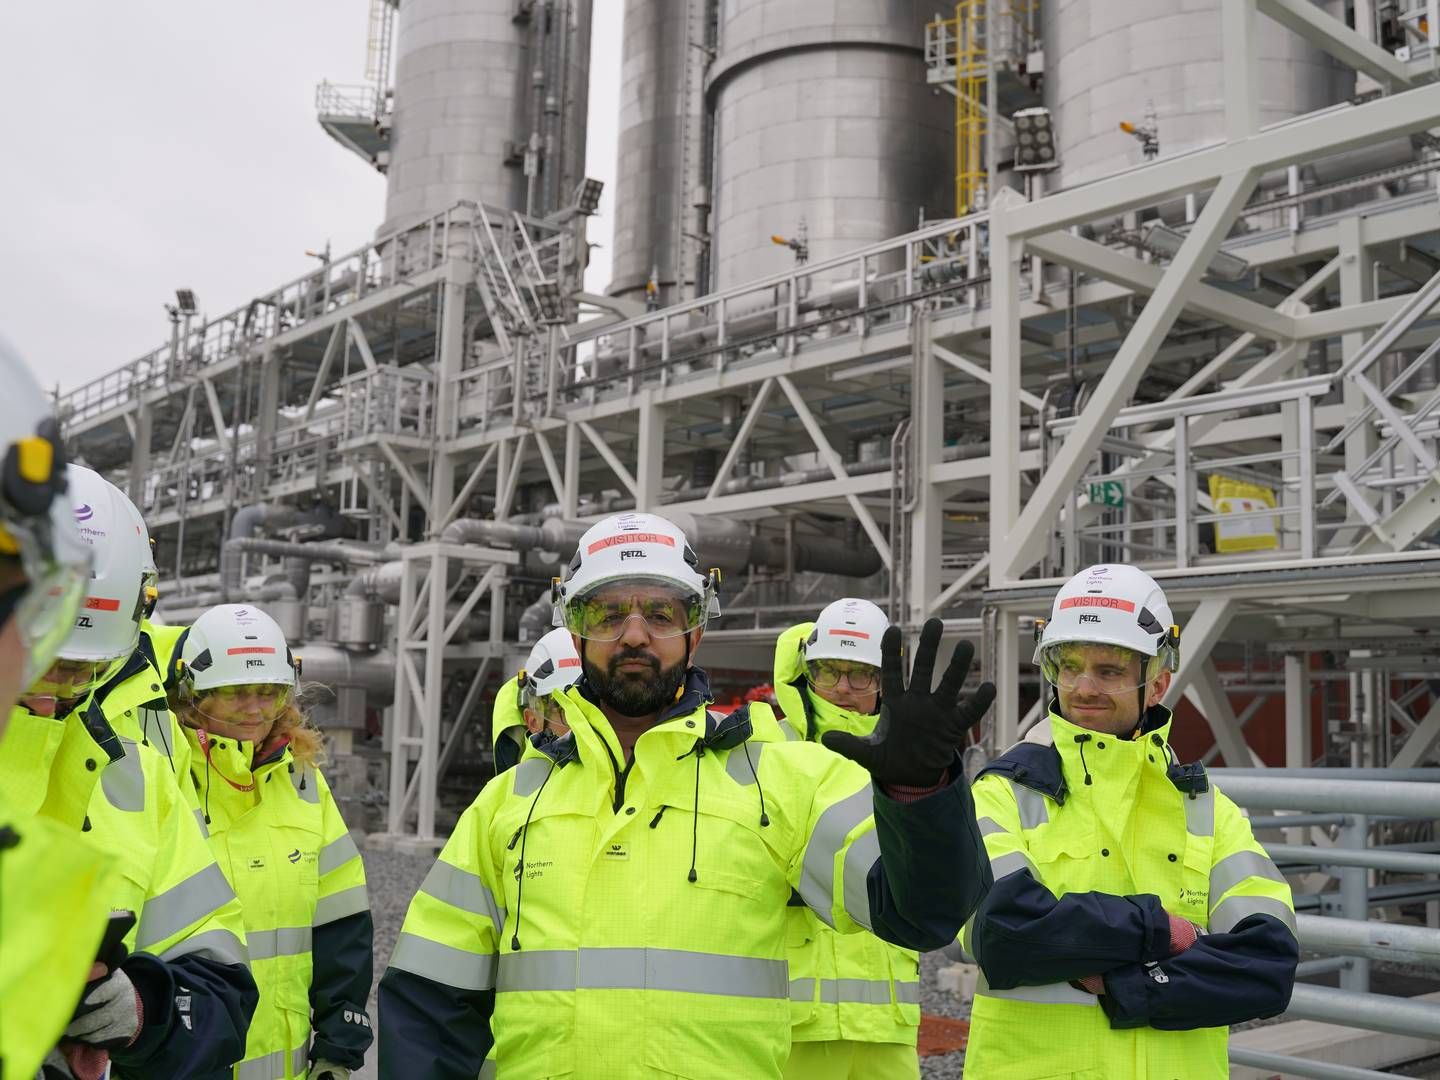 Imran Abdul-Majid er teknisk leder af Northern Lights-projektet, der er bygget lidt uden for Bergen i Norge. Han viste EnergiWatch rundt på sitet, hvor der i de kommende år skal lagres op mod fem mio. ton CO2 om året. Foto: Laura Kold